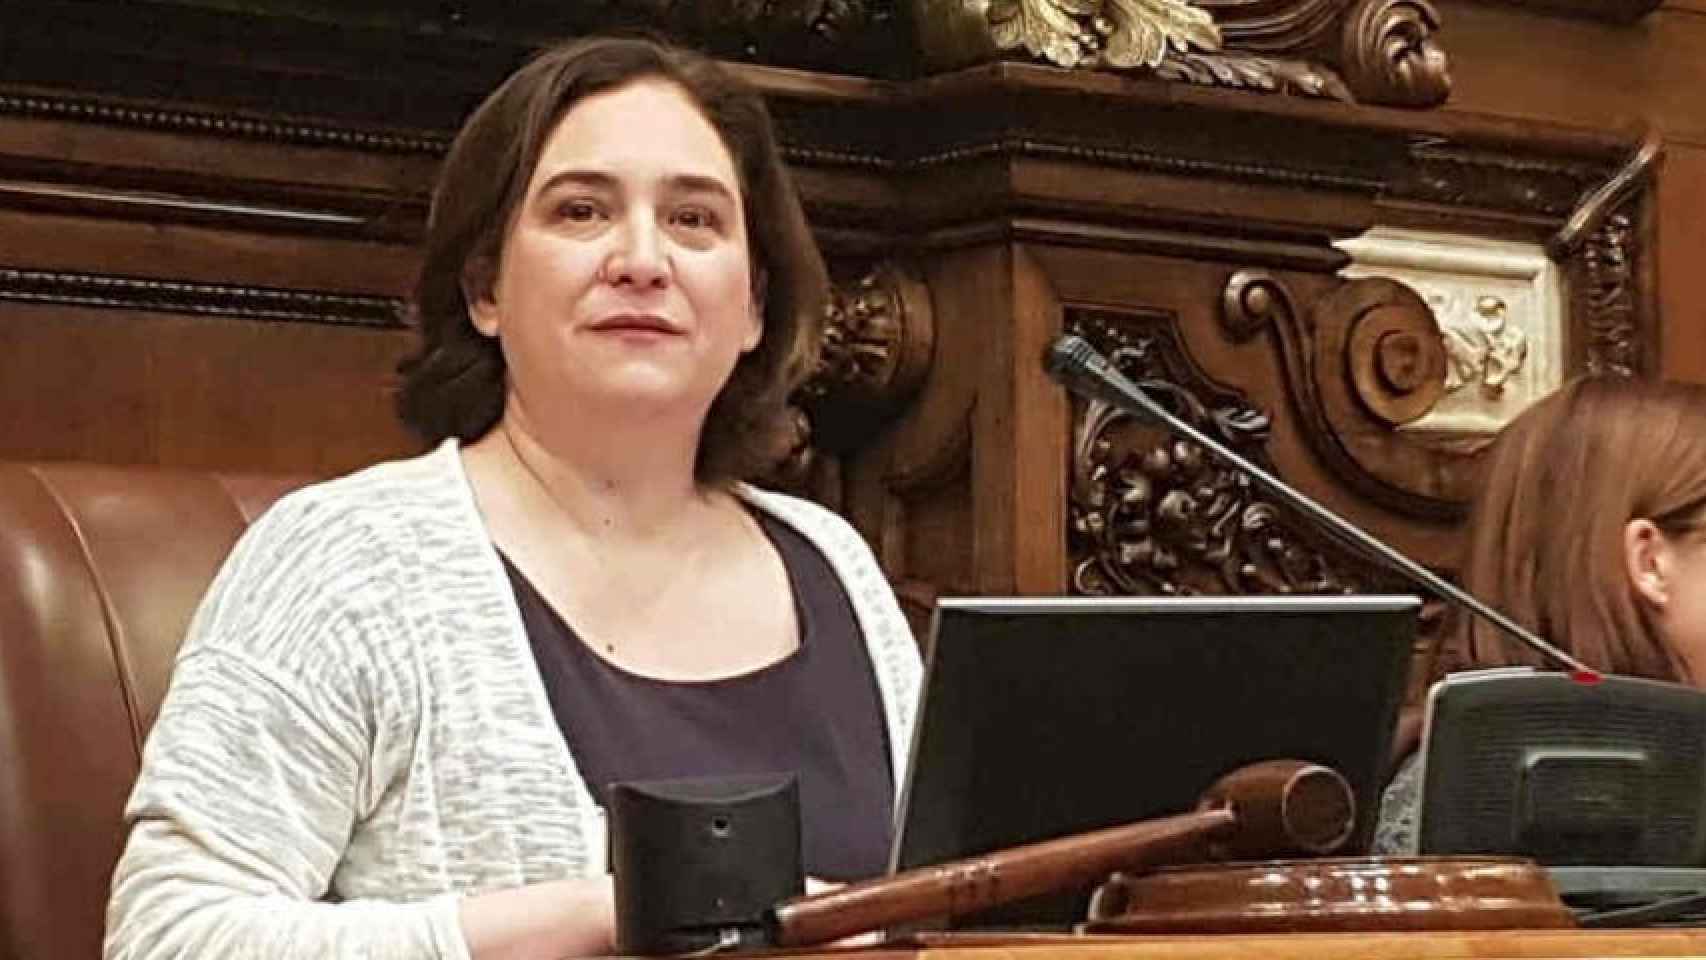 La alcaldesa de Barcelona, Ada Colau / EUROPA PRESS